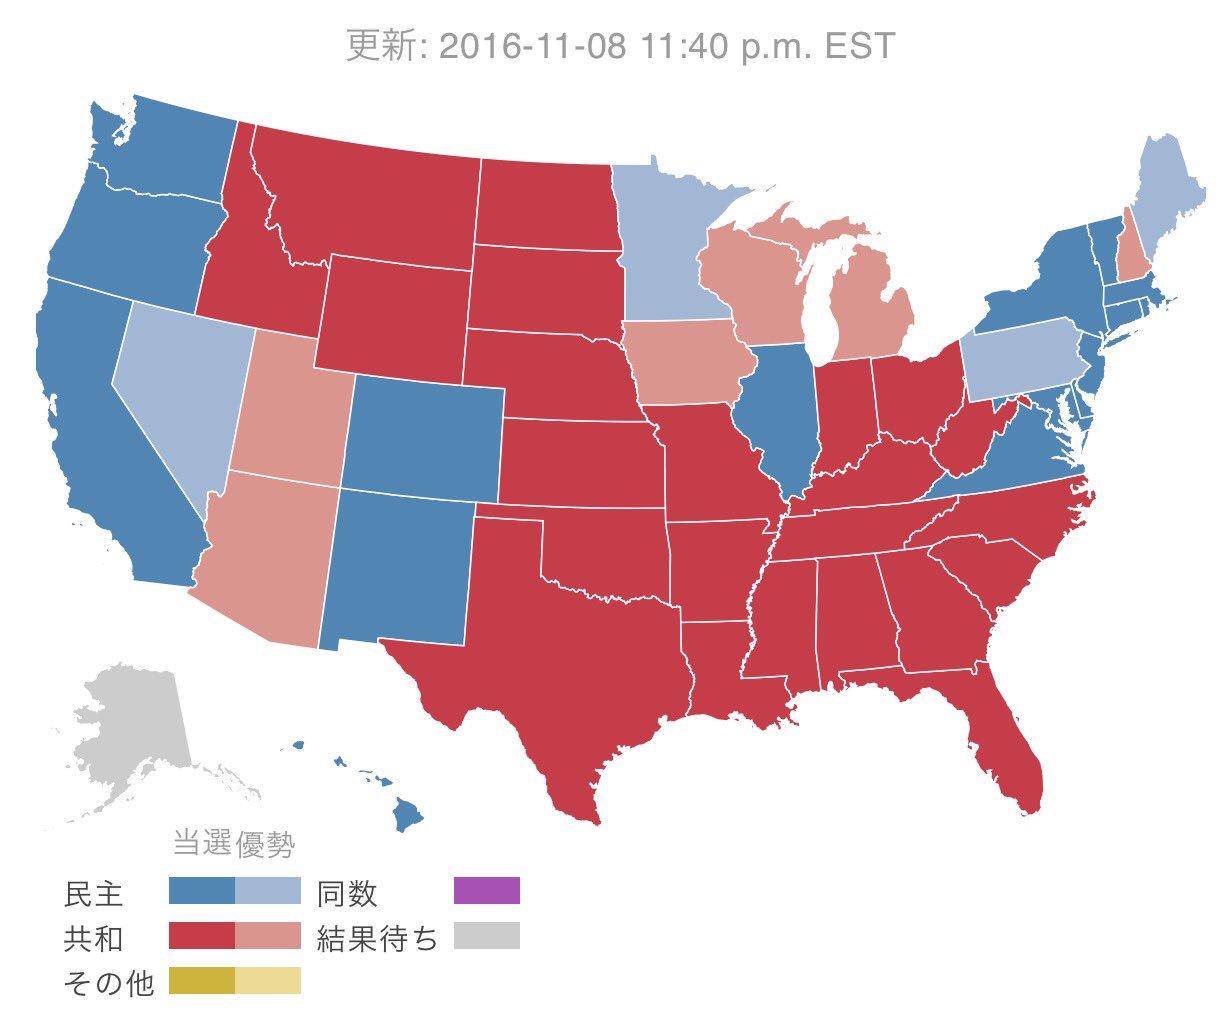 米大統領選挙の速報。色分けで両陣営の優勢状況を表現している。